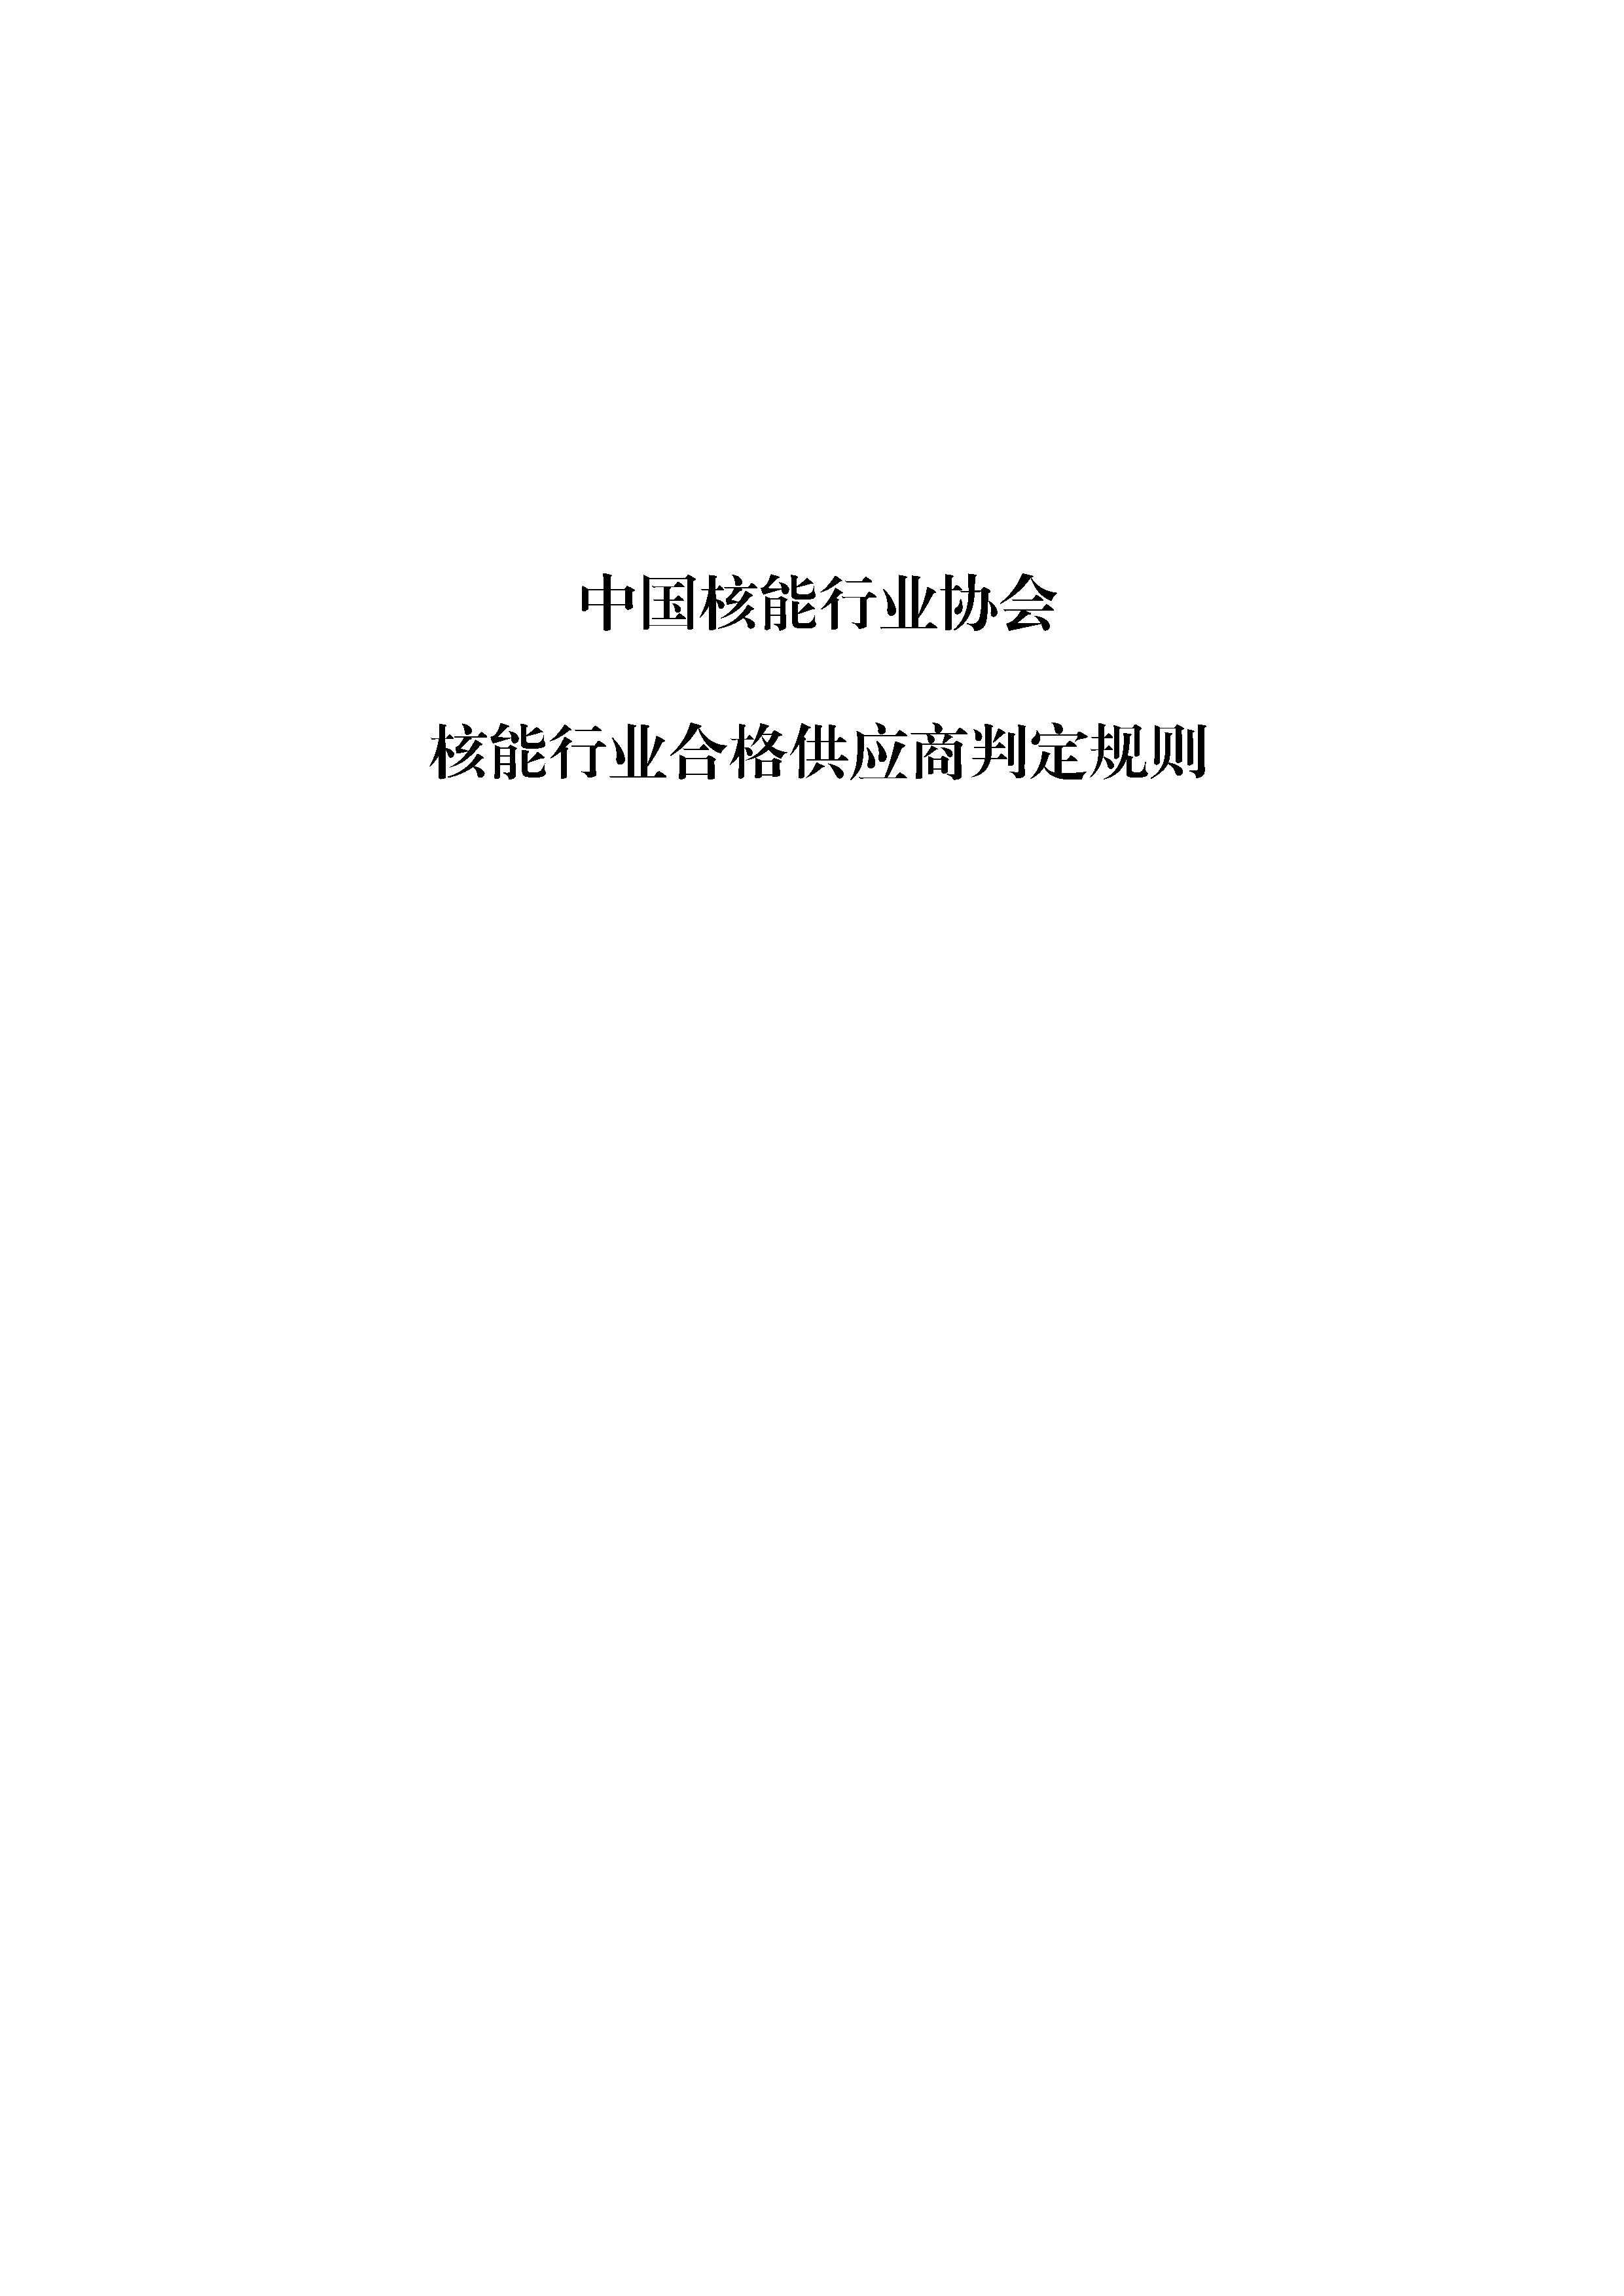 B.11《中国核能行业协会核能行业合格供应商判定规则》（修订版20211026）_页面_01.png